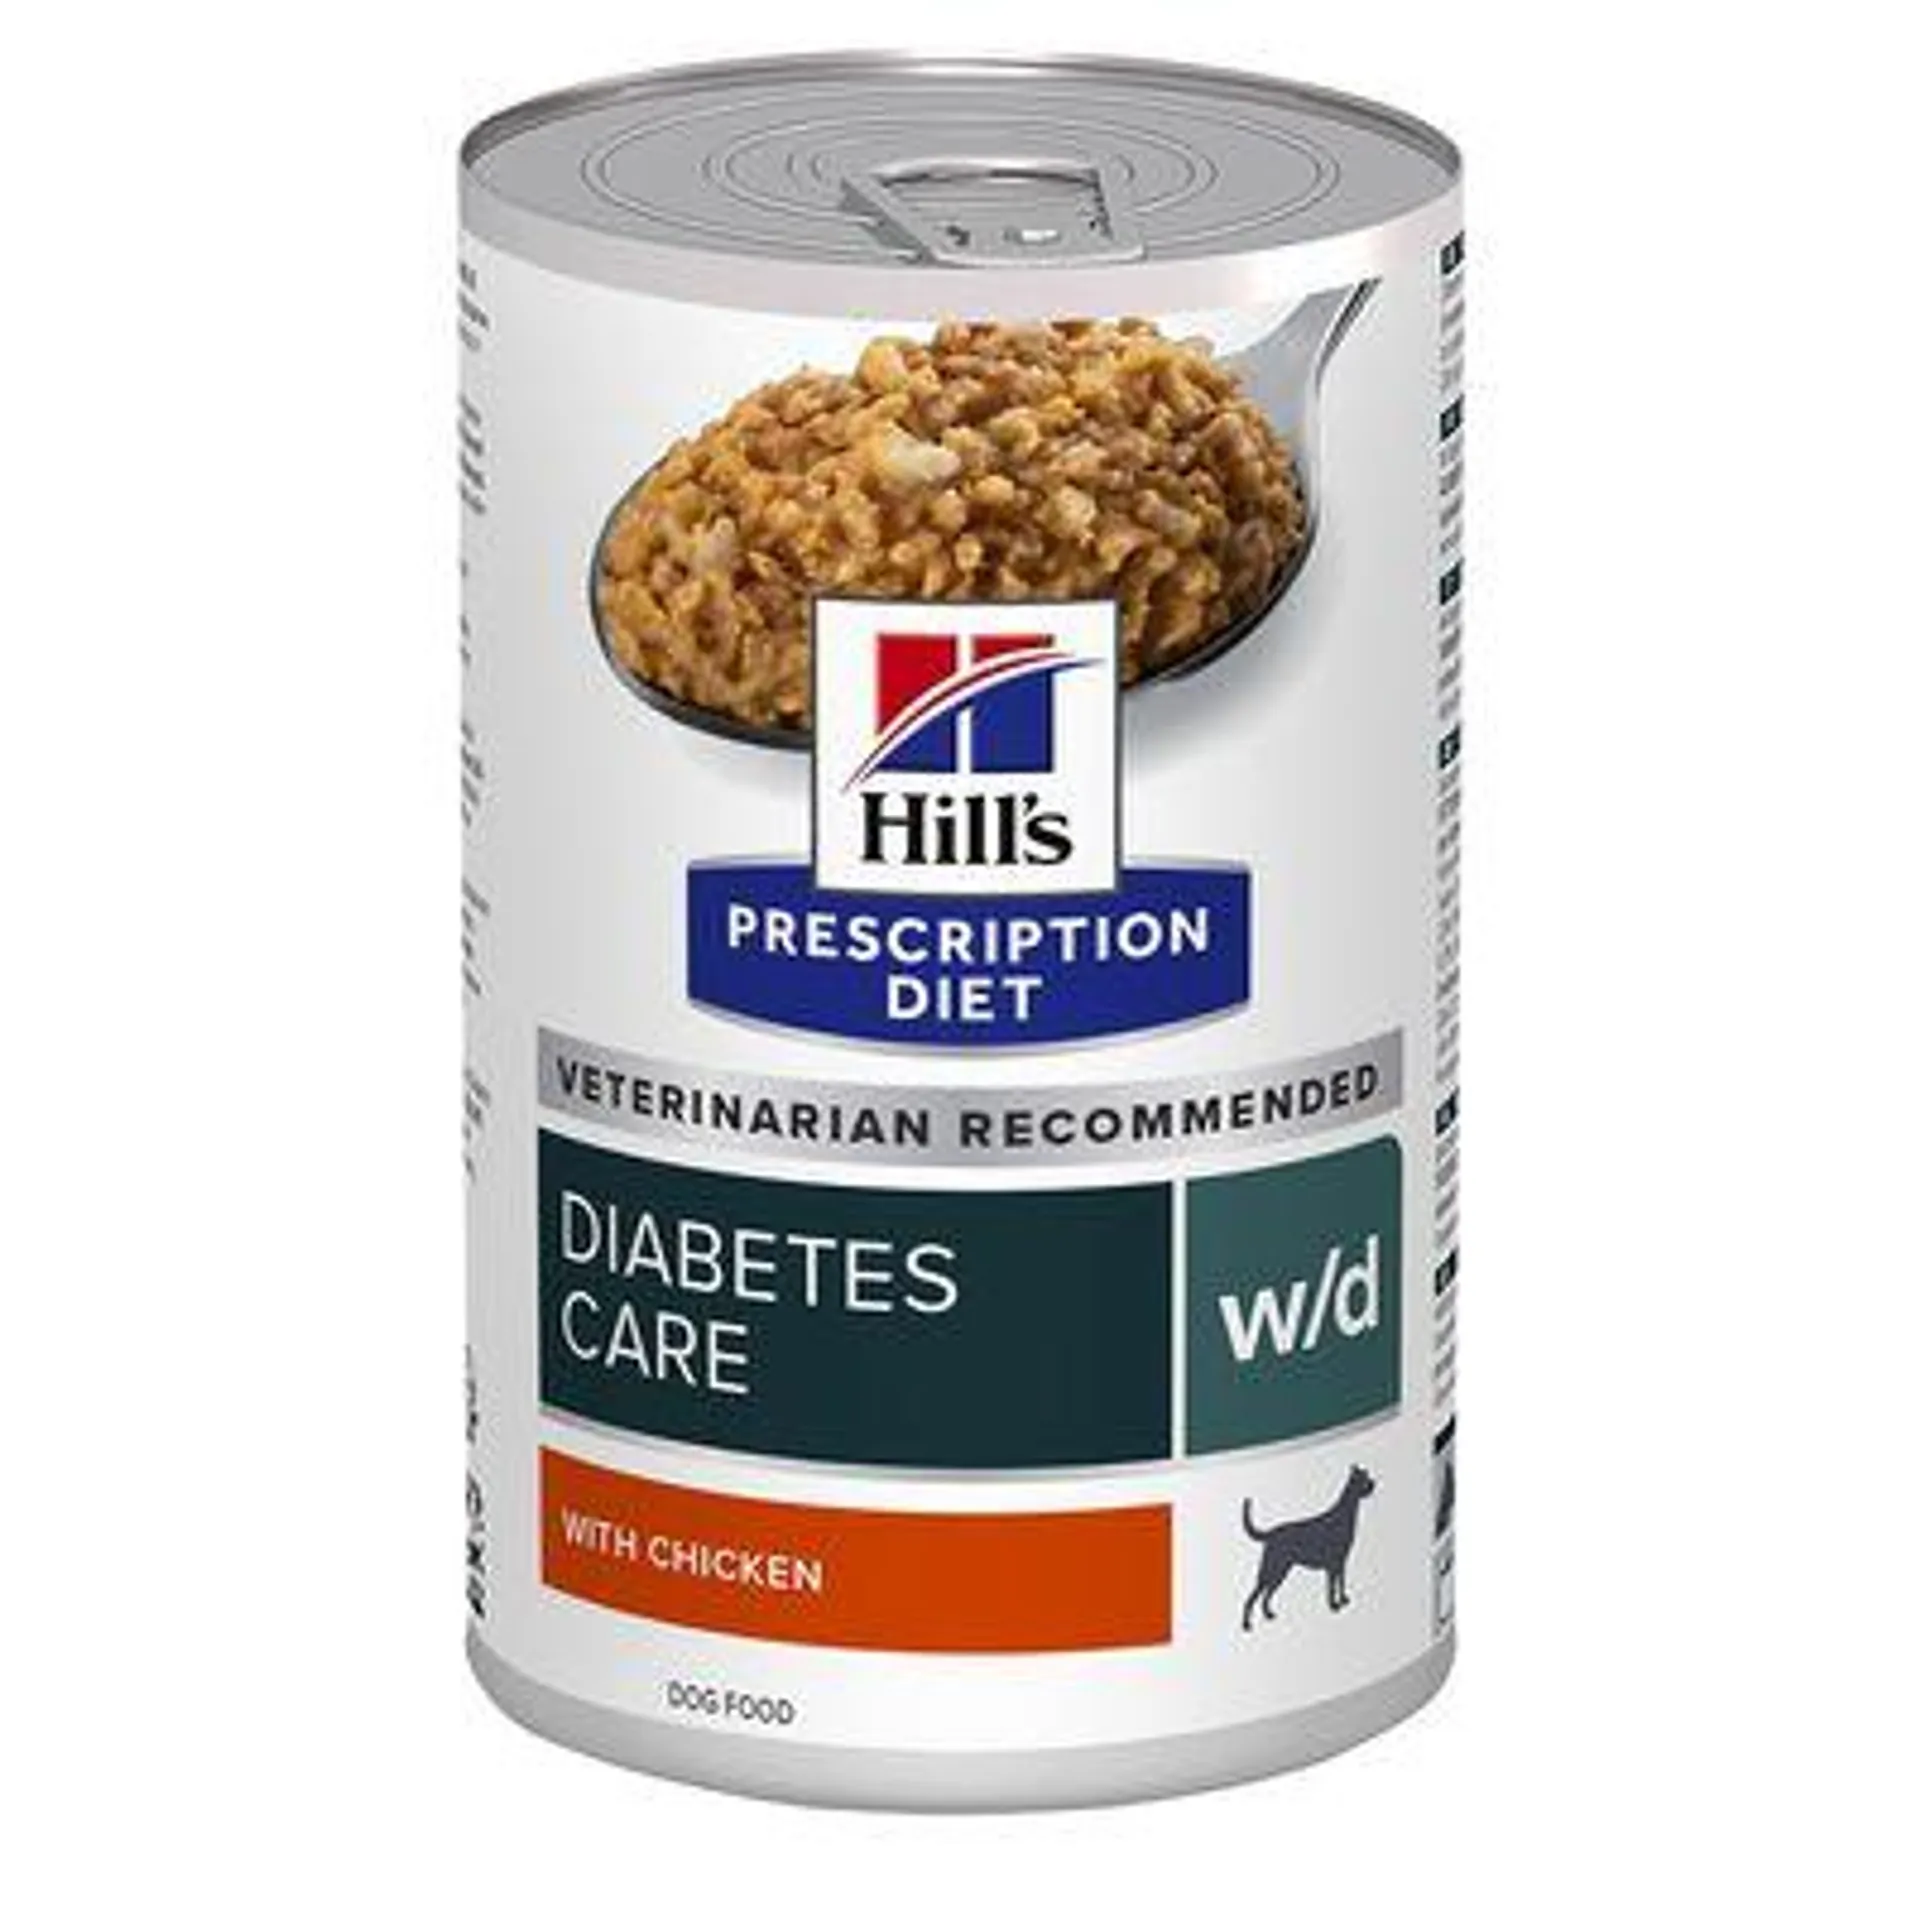 Hill's Prescription Diet 12 x 370 g latas em promoção: 10 + 2 grátis!